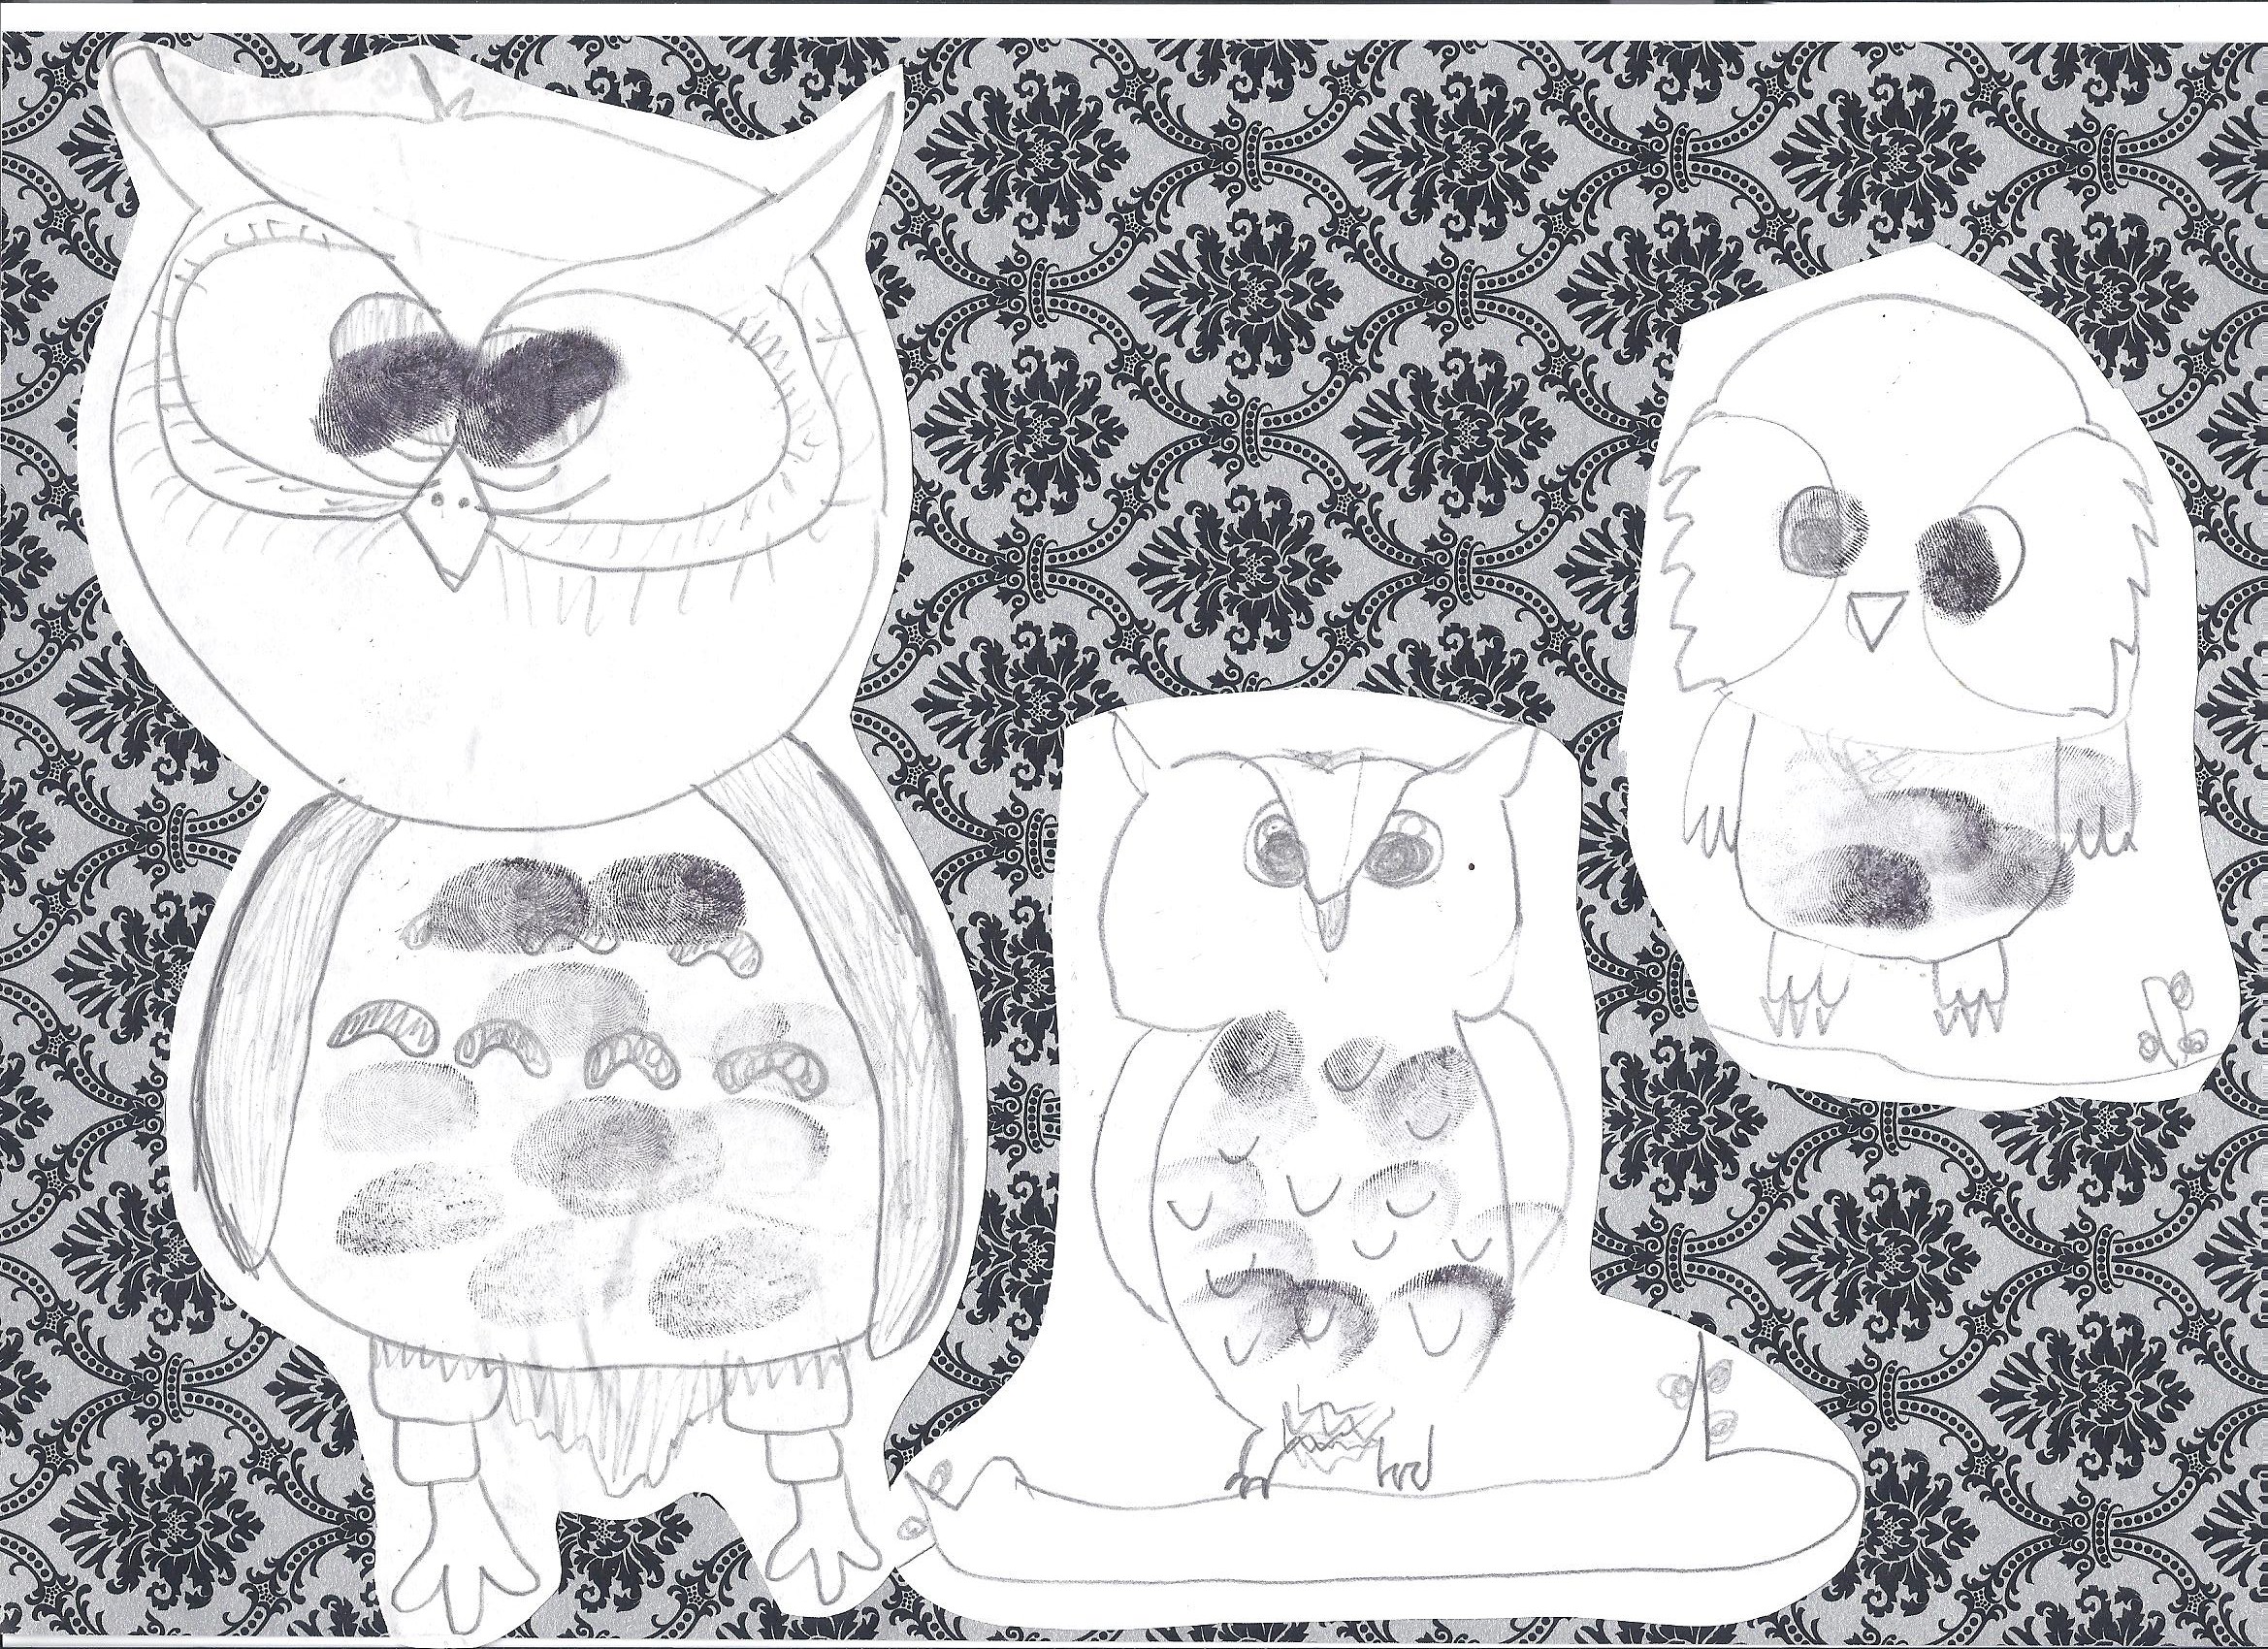 Owls